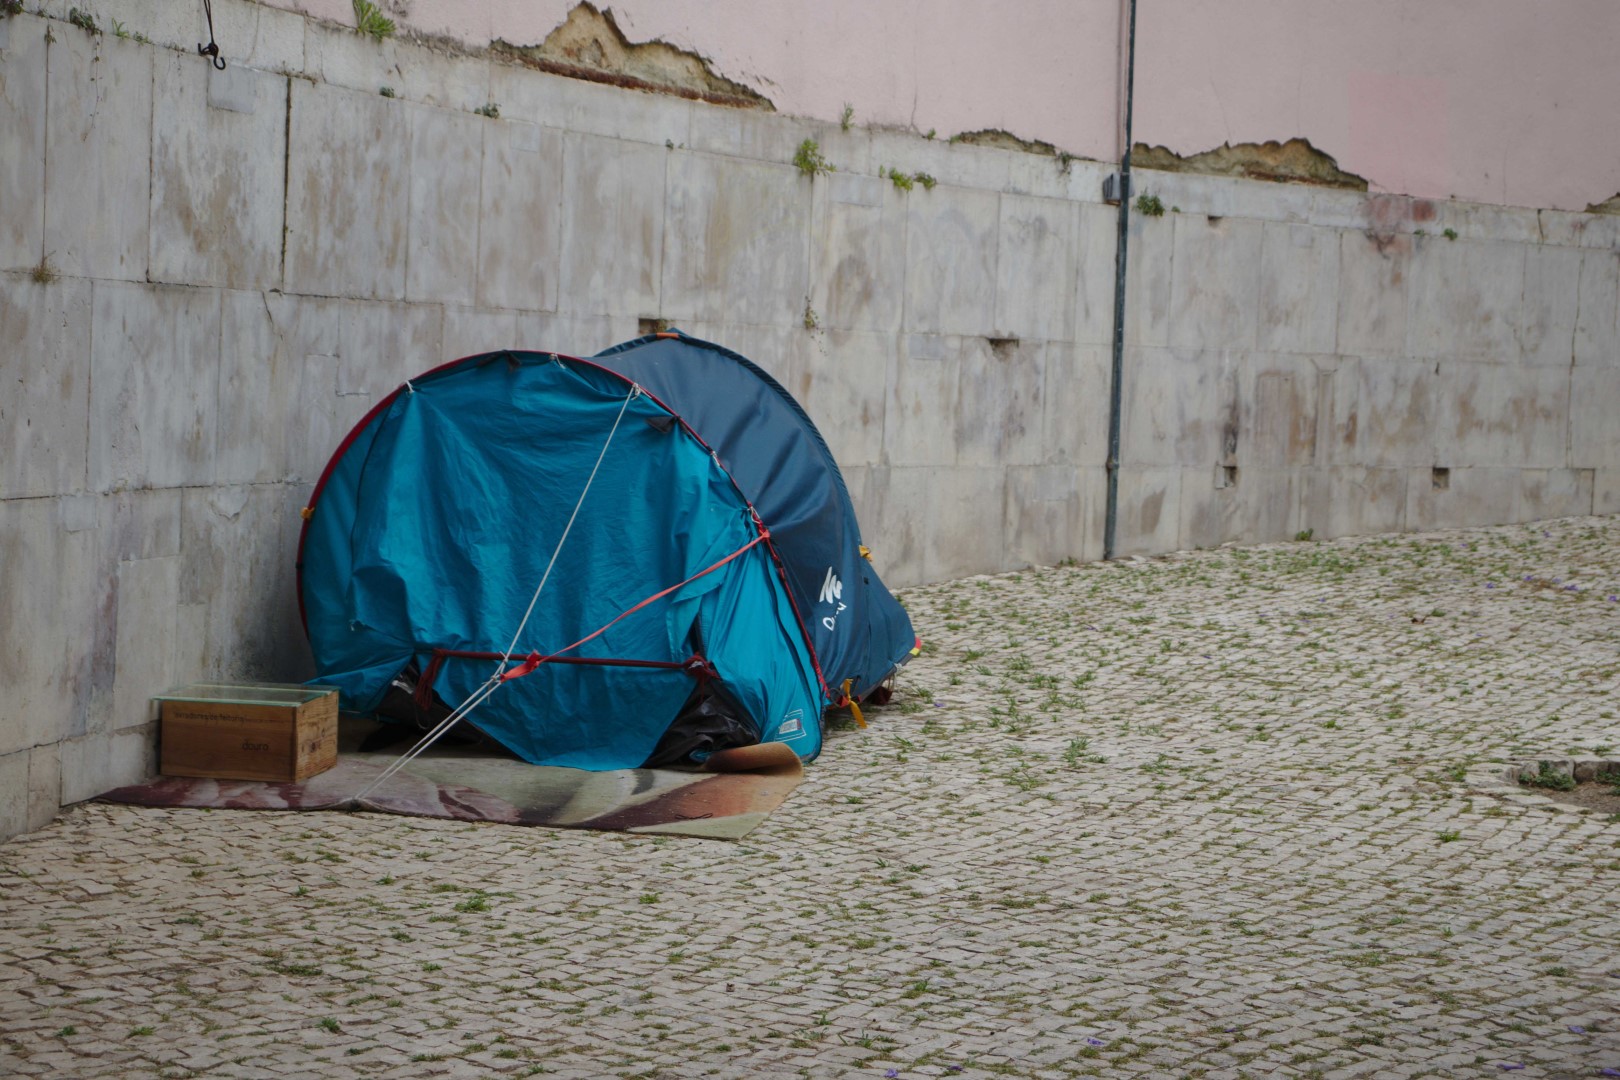 tenda na rua sem-abrigo